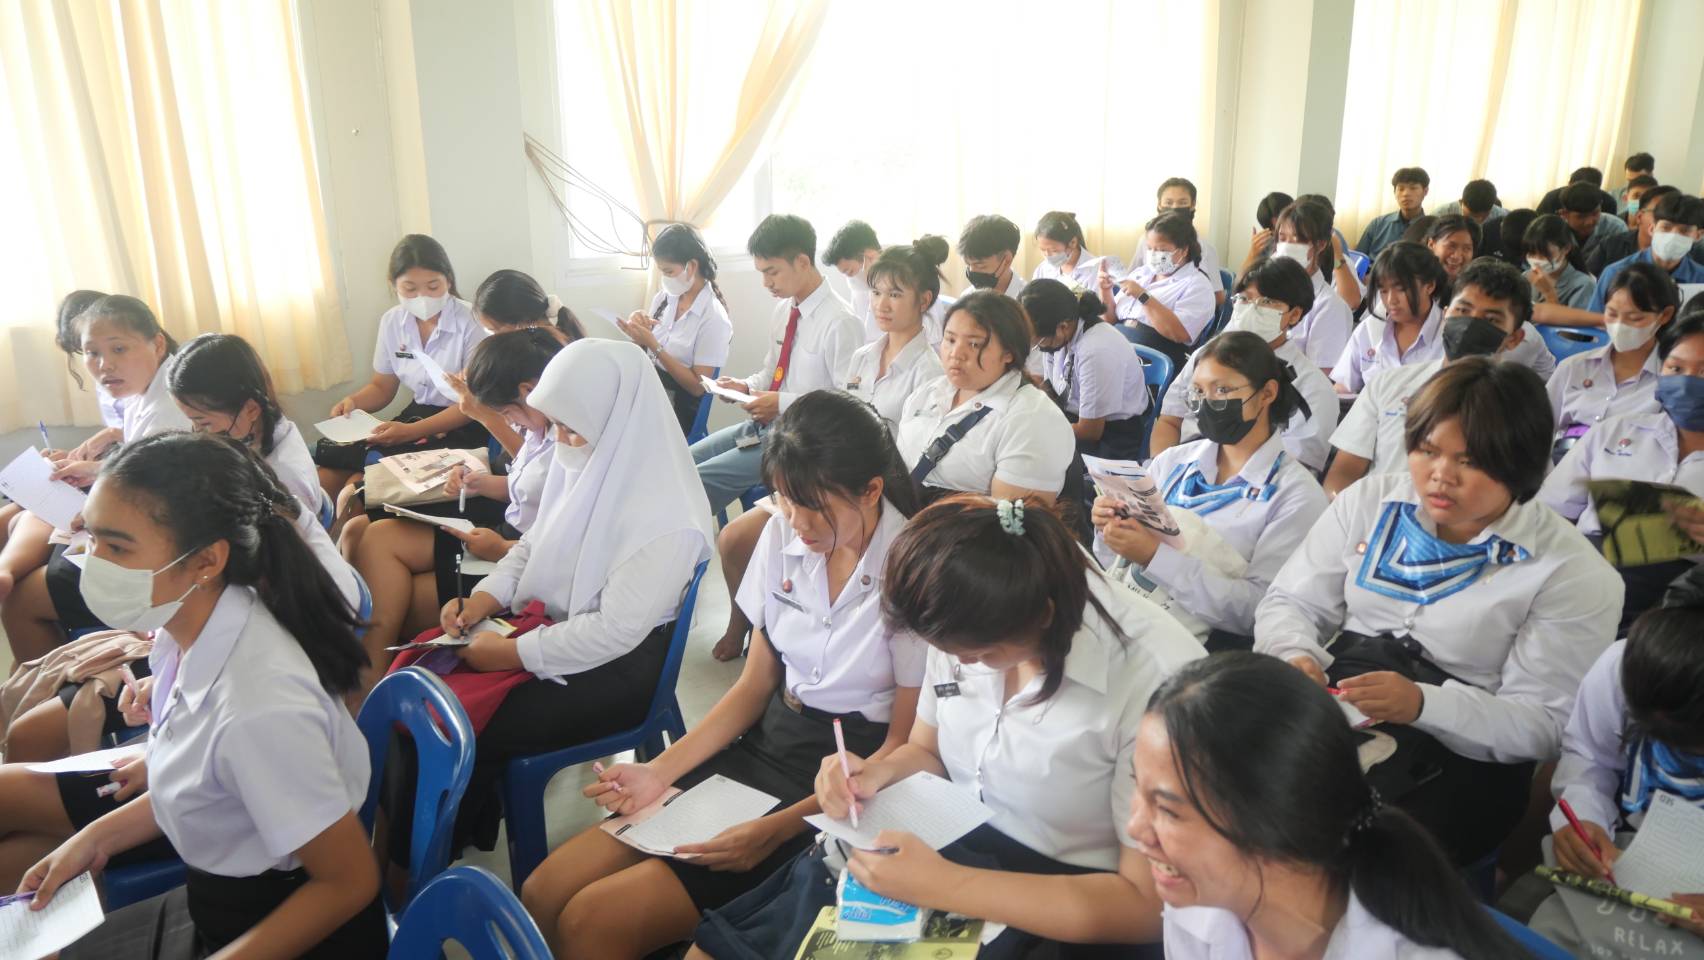 โครงการเตรียมความพร้อมเข้าสู่สังคมผู้สูงอายุอย่างมีคุณภาพ รุ่นที่ 4 (จำนวน 220 คน) ประปีงบประมาณ 2566 ณ วิทยาลัยเทคนิคพัทยา จังหวัดชลบุรี